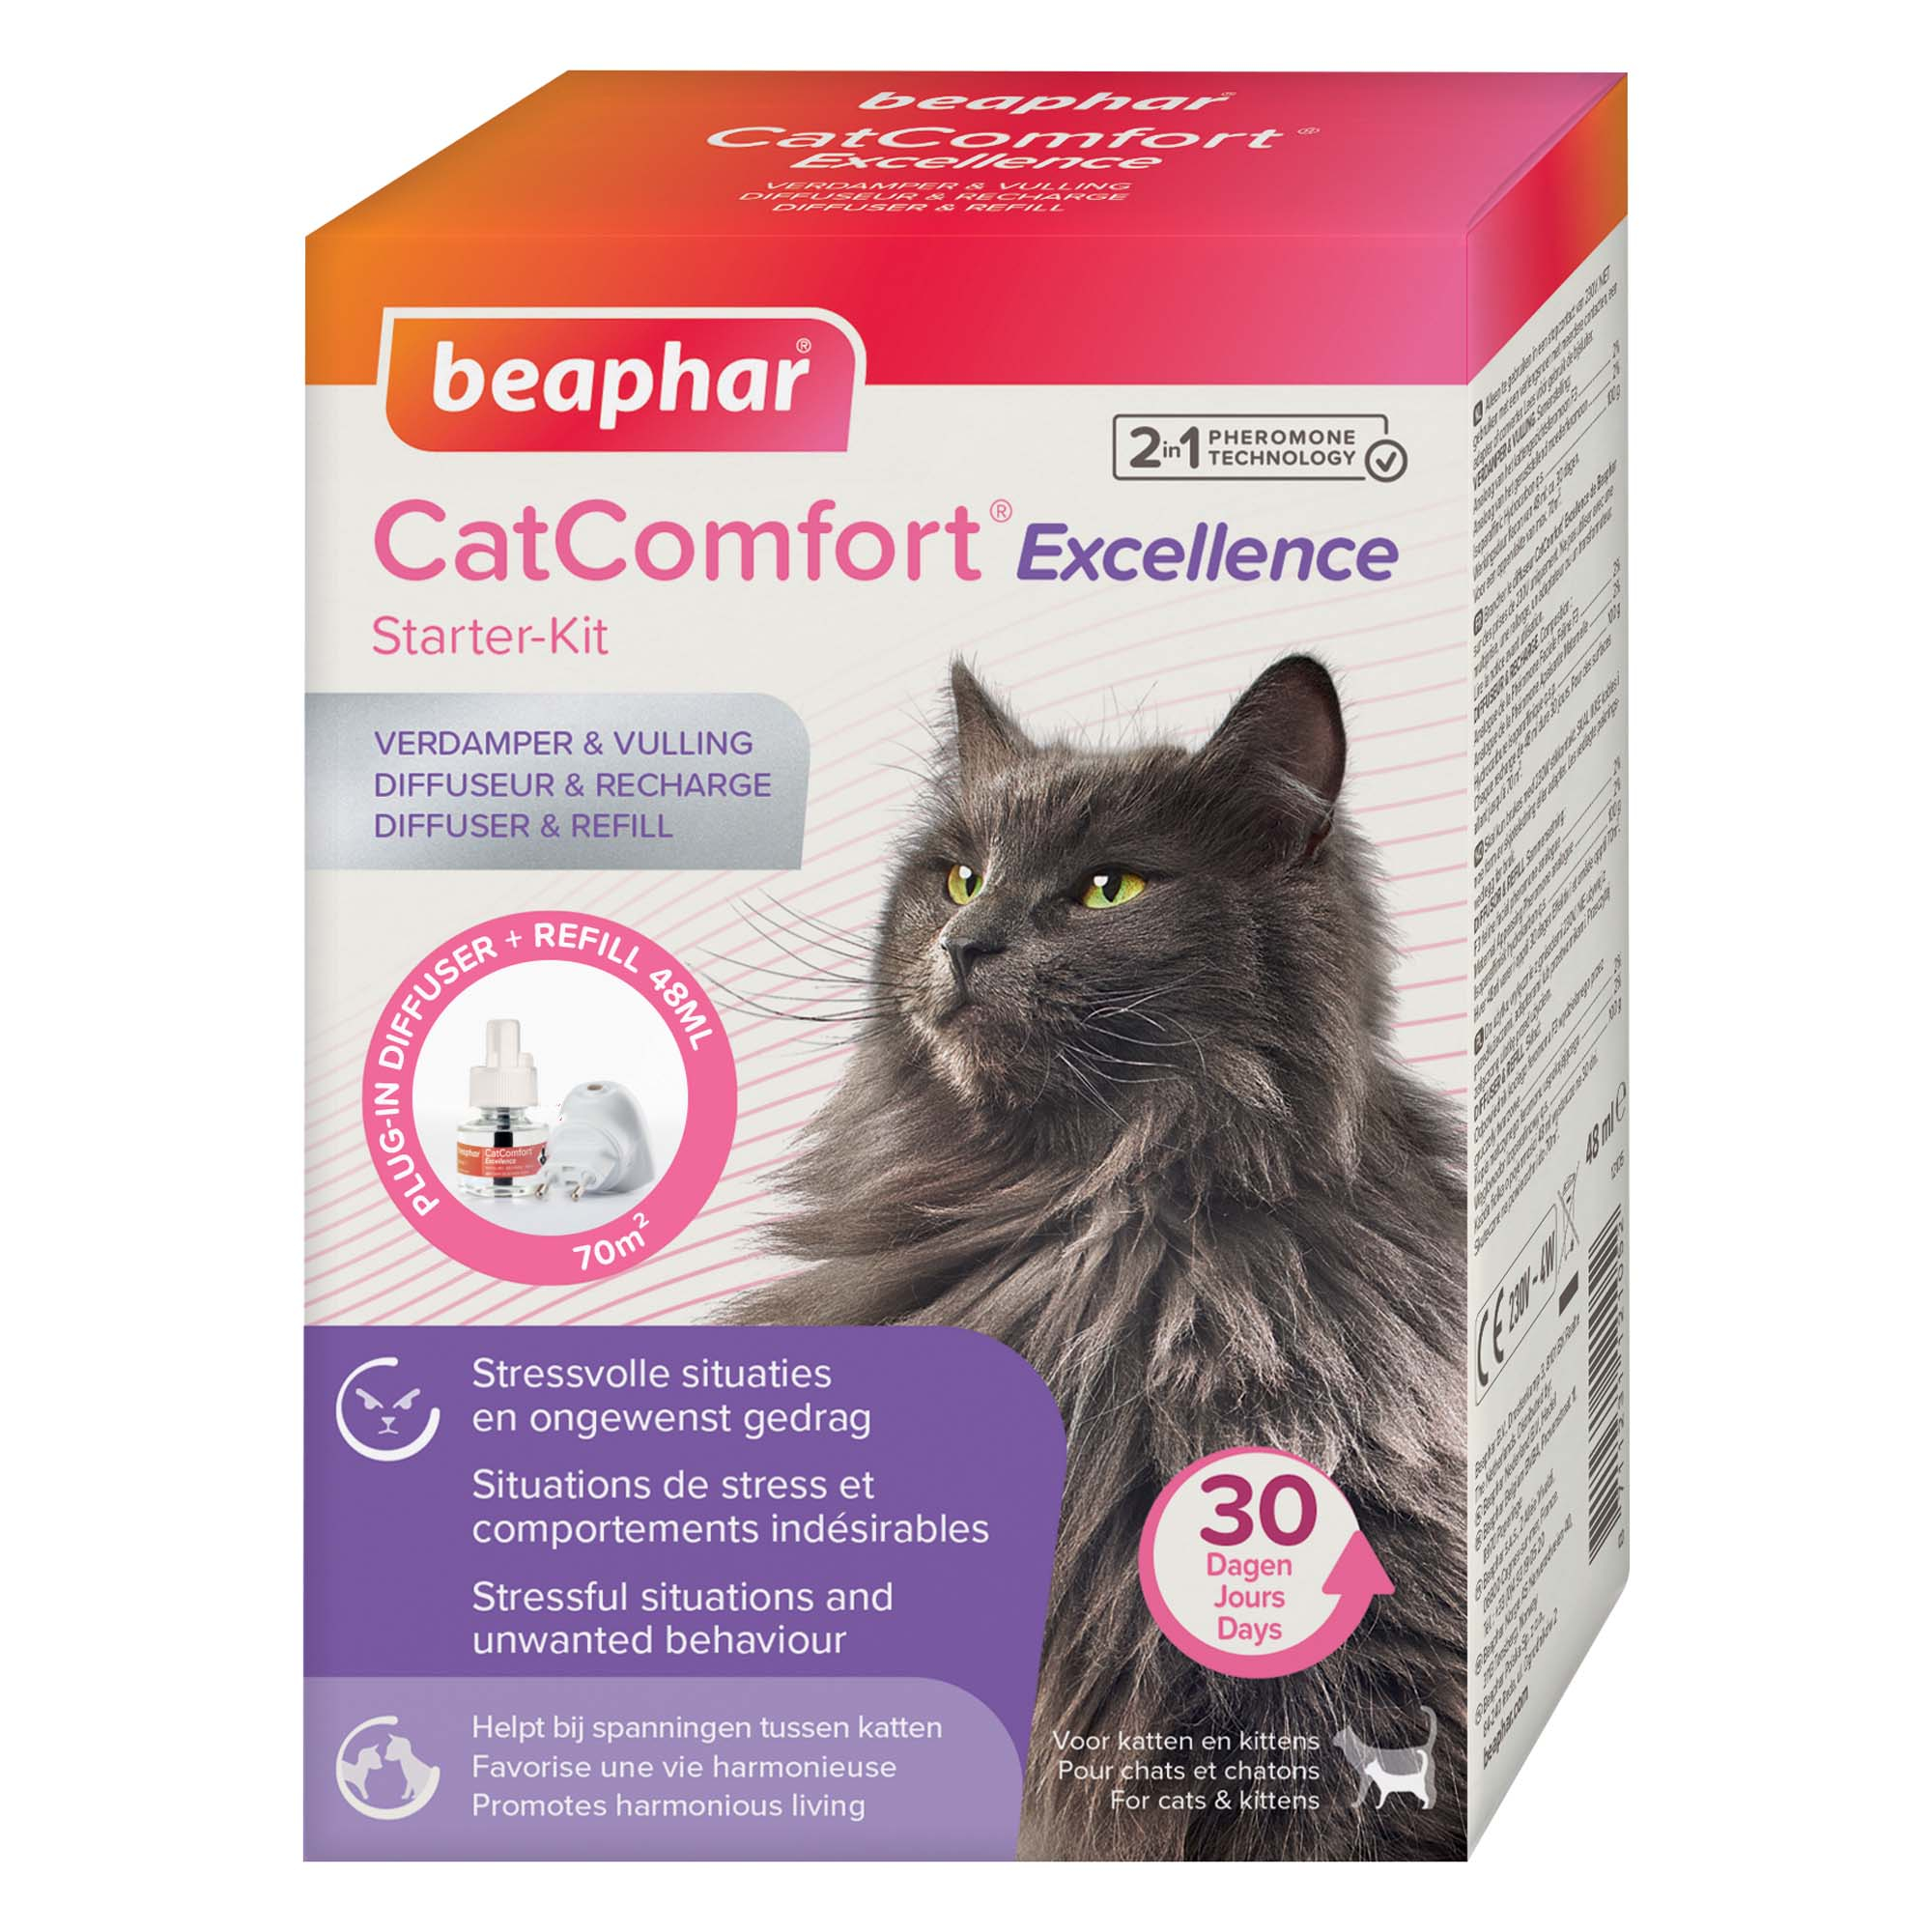 CATCOMFORT® EXCELLENCE, Beruhigender Verdampfer und Nachfüllpack mit Pheromonen für Katzen und Kätzchen